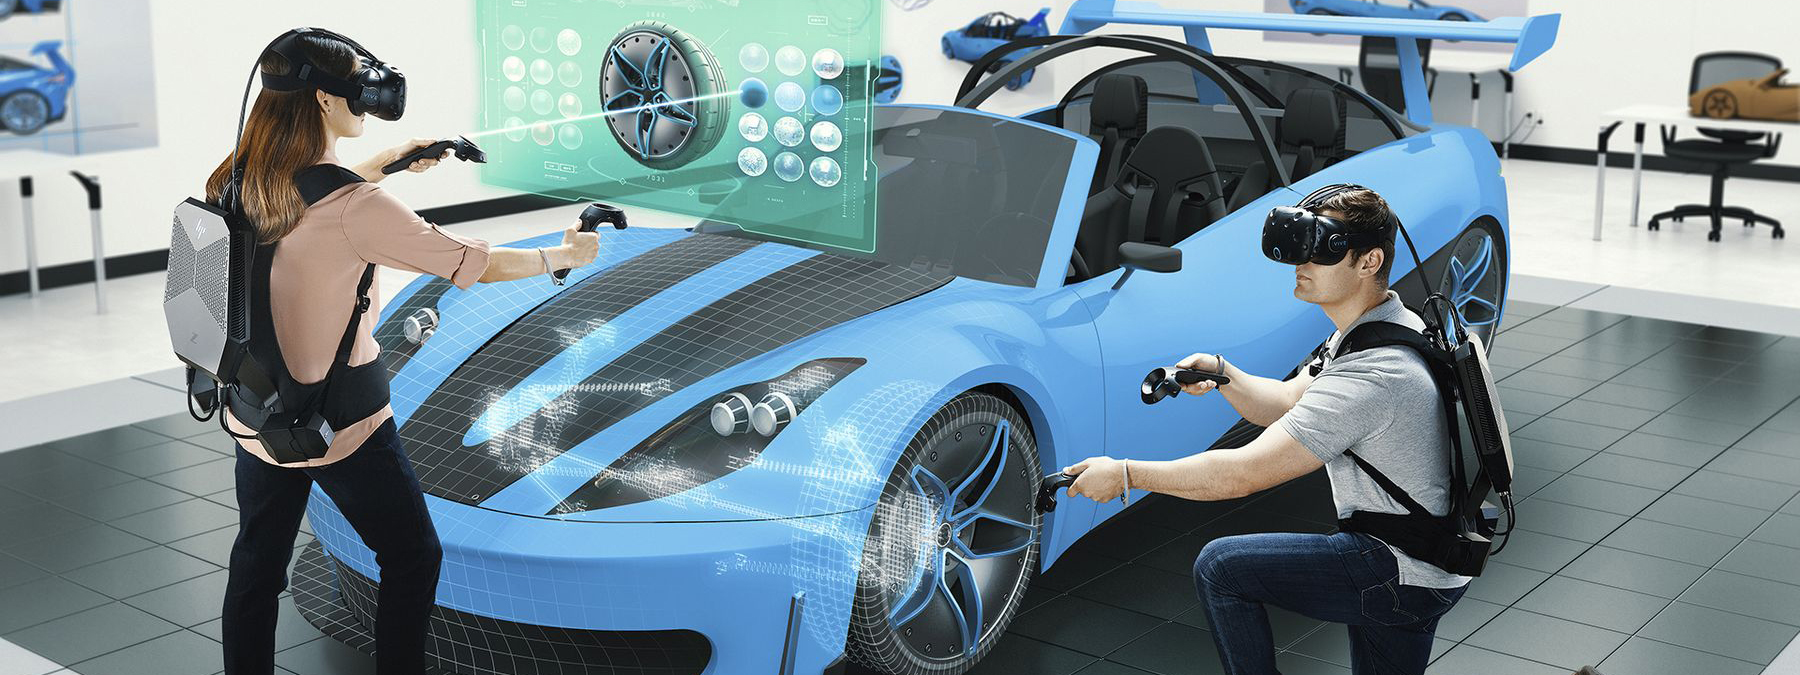 HP ra mắt máy trạm đeo lưng cho giải pháp VR, đồ họa Quadro, 3299 USD